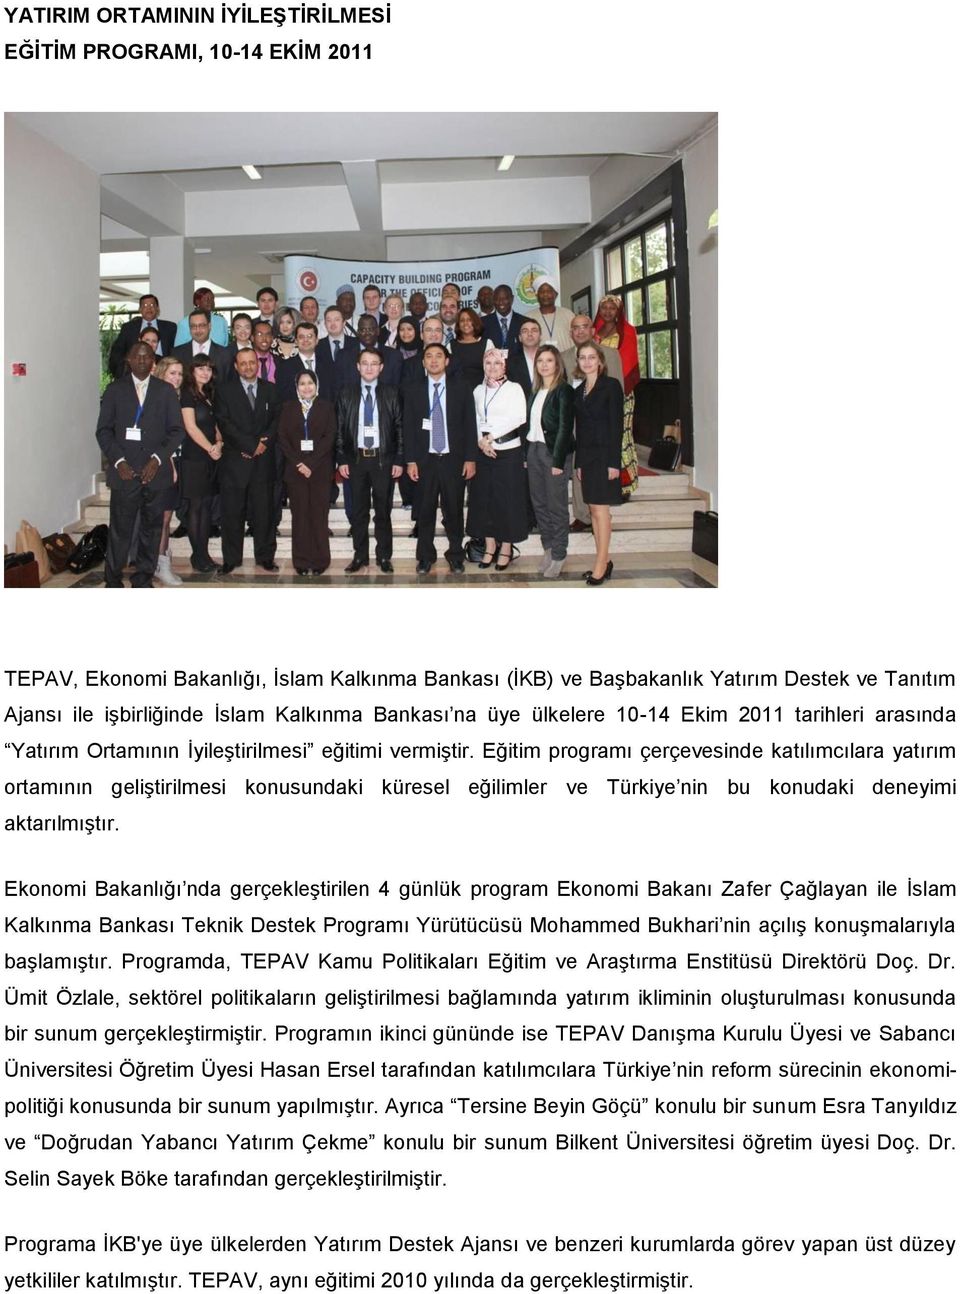 Eğitim programı çerçevesinde katılımcılara yatırım ortamının geliştirilmesi konusundaki küresel eğilimler ve Türkiye nin bu konudaki deneyimi aktarılmıştır.